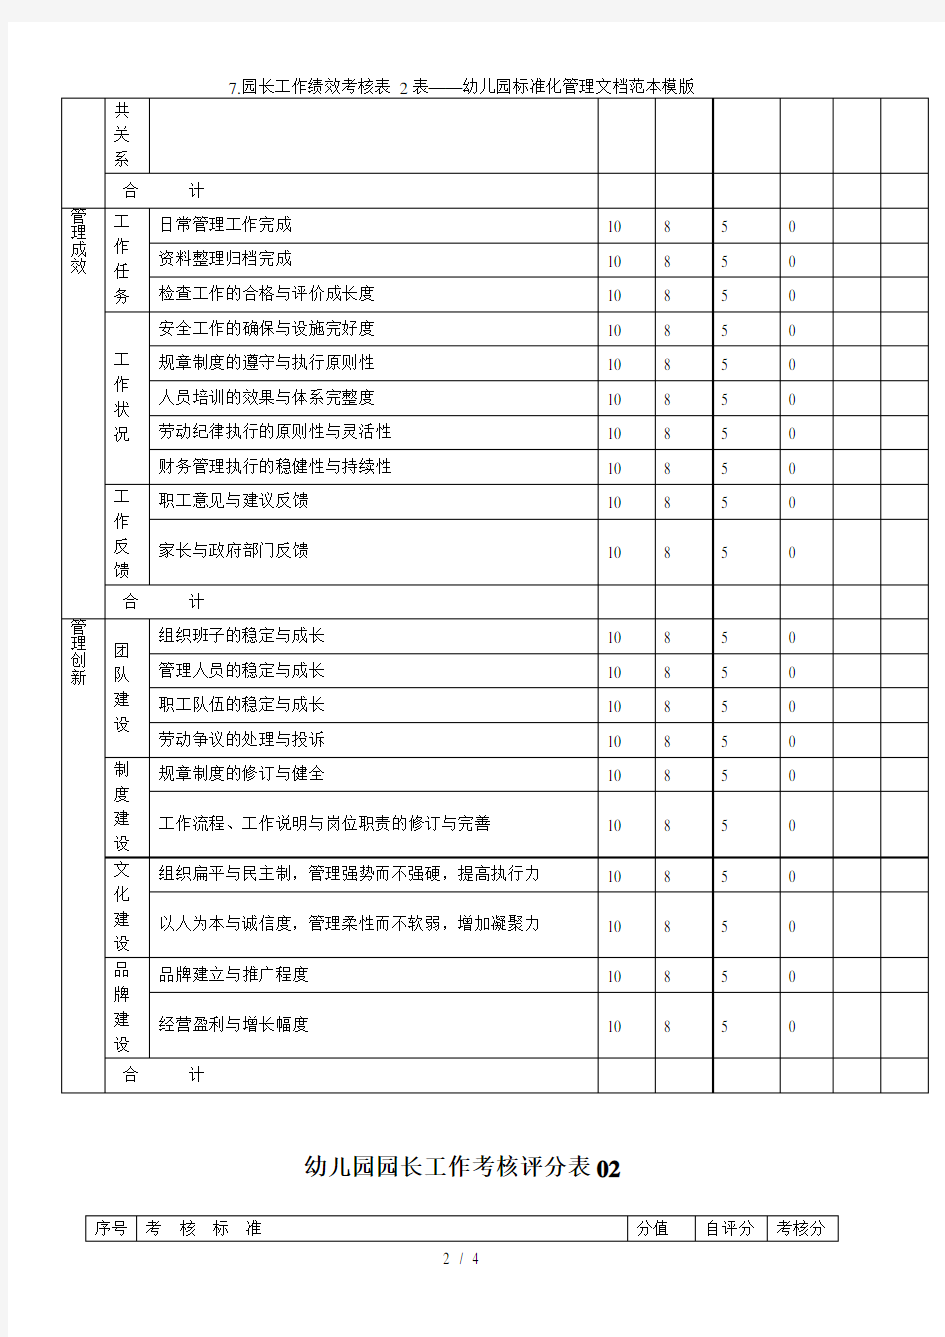 7.园长工作绩效考核表 2表——幼儿园标准化管理文档范本模版